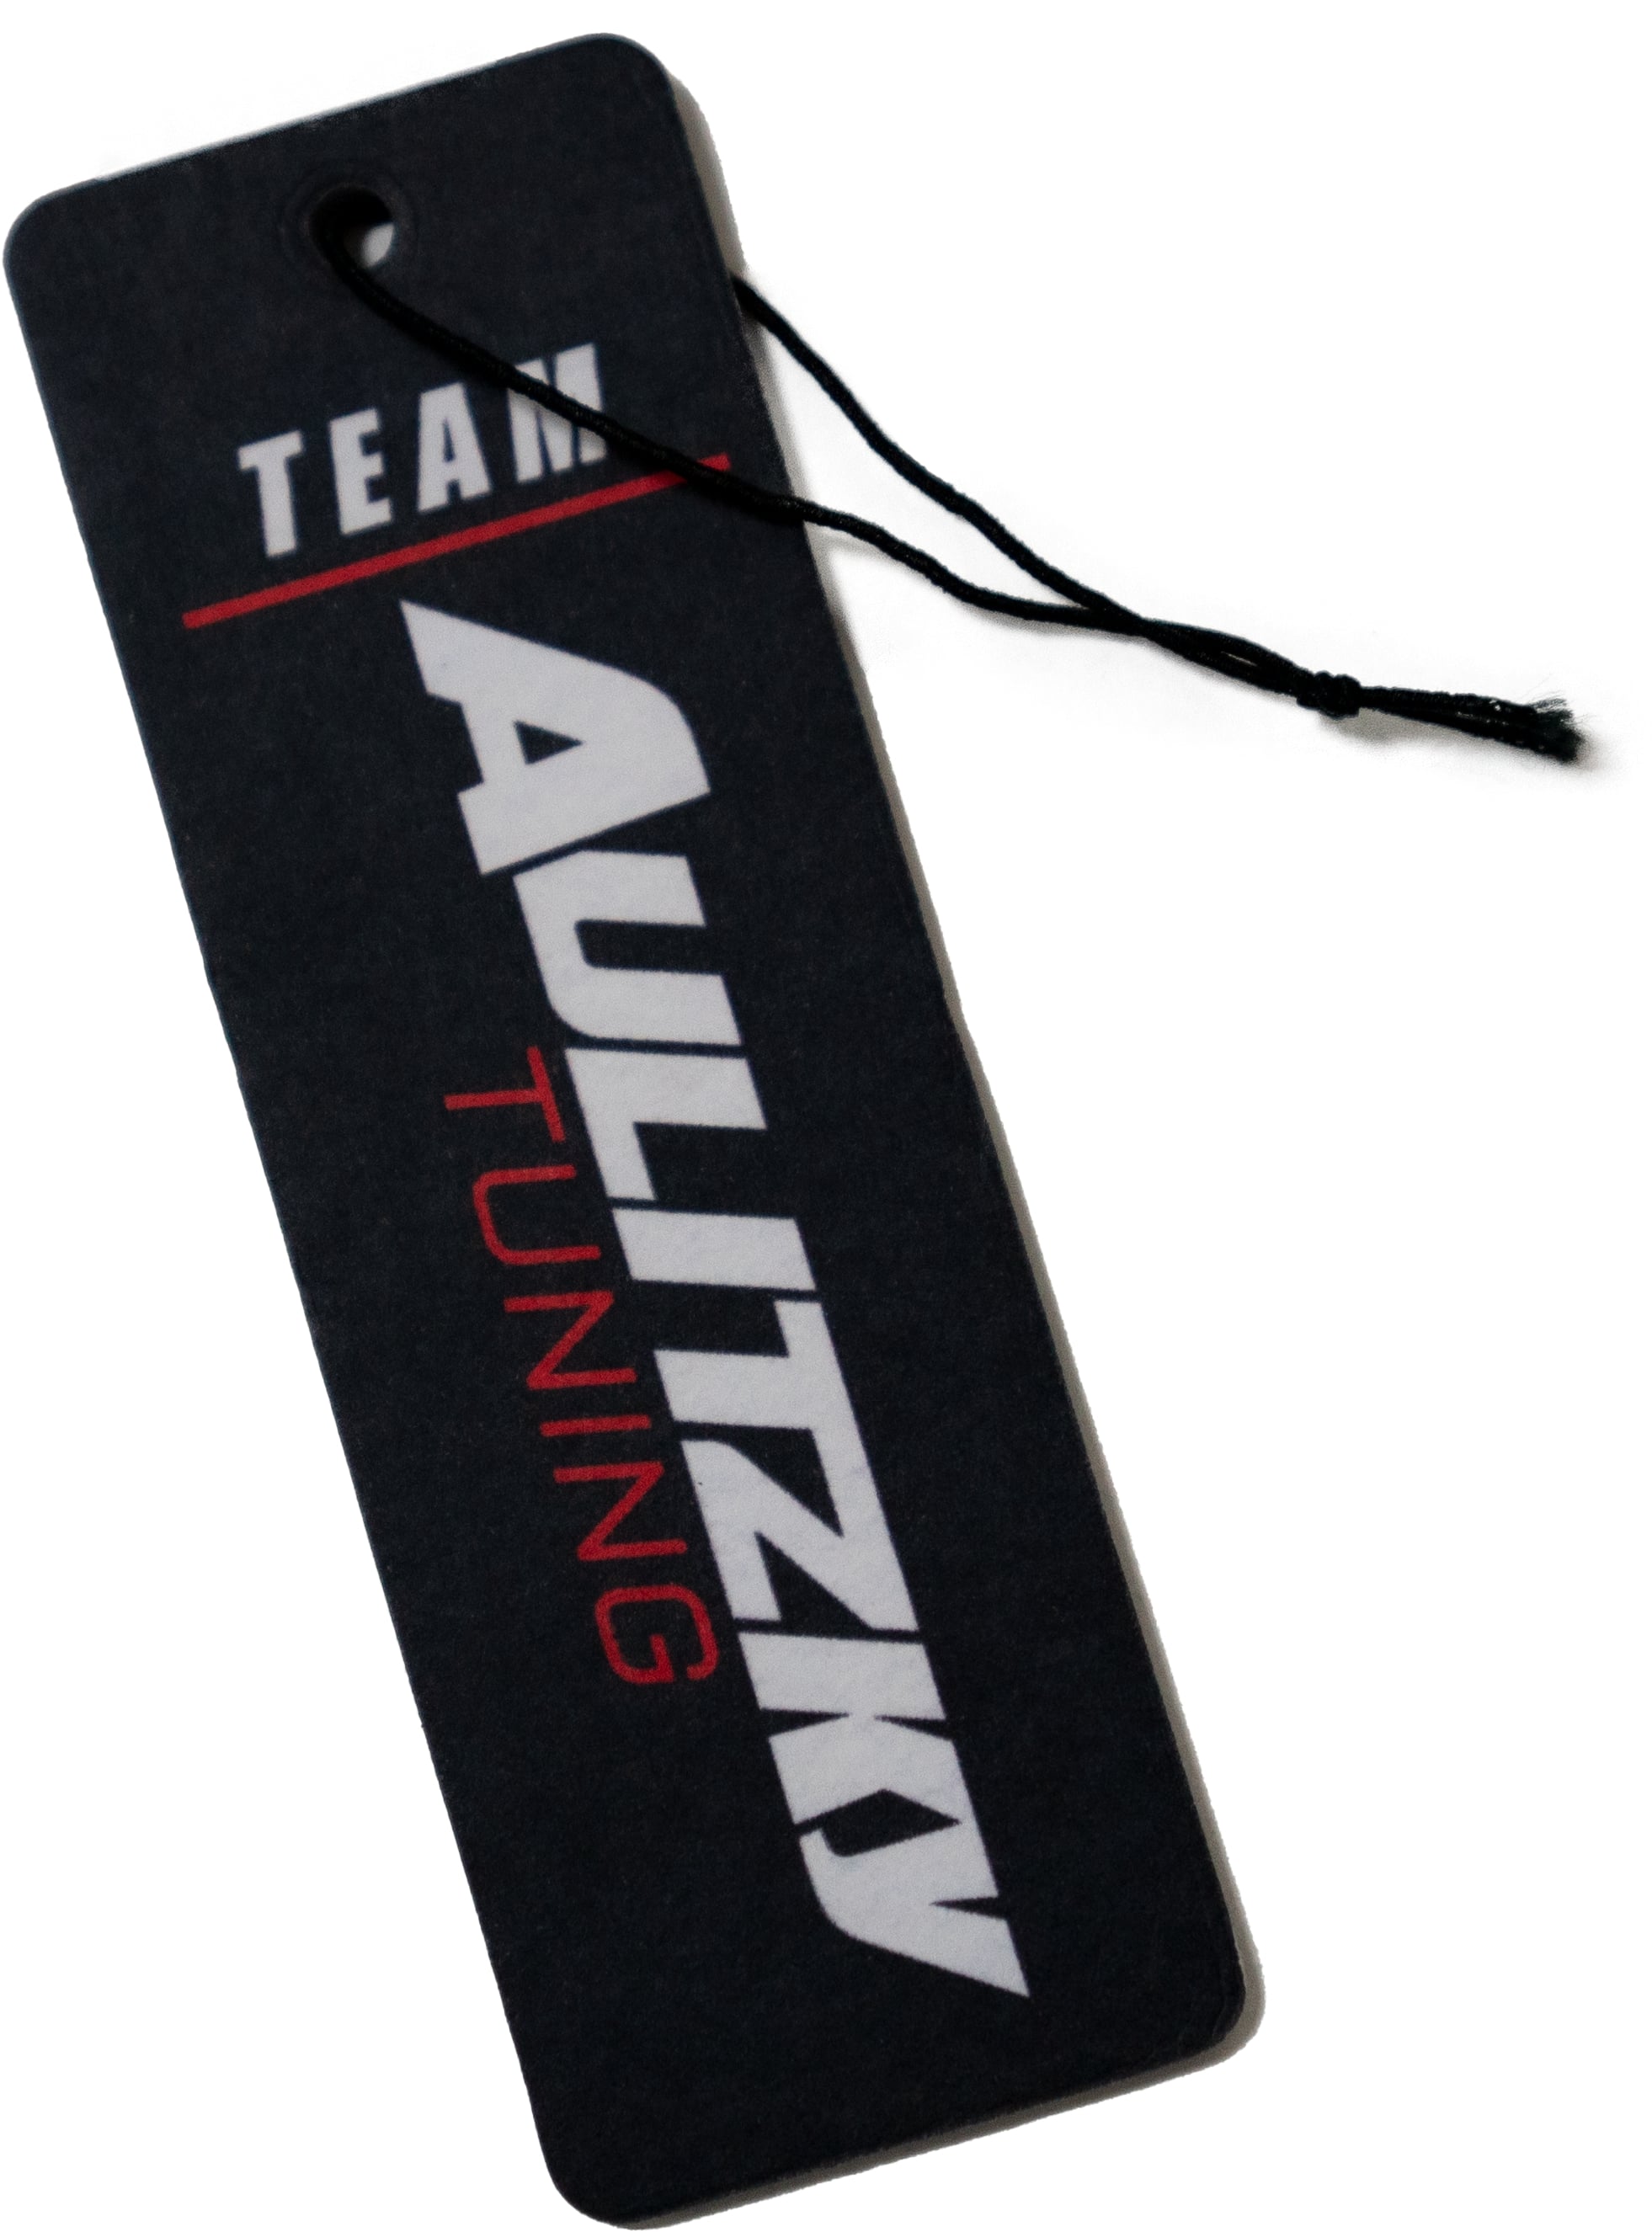 Team Aulitzky Tuning | Car Air Freshener Duftbaum | verschiedene Düfte